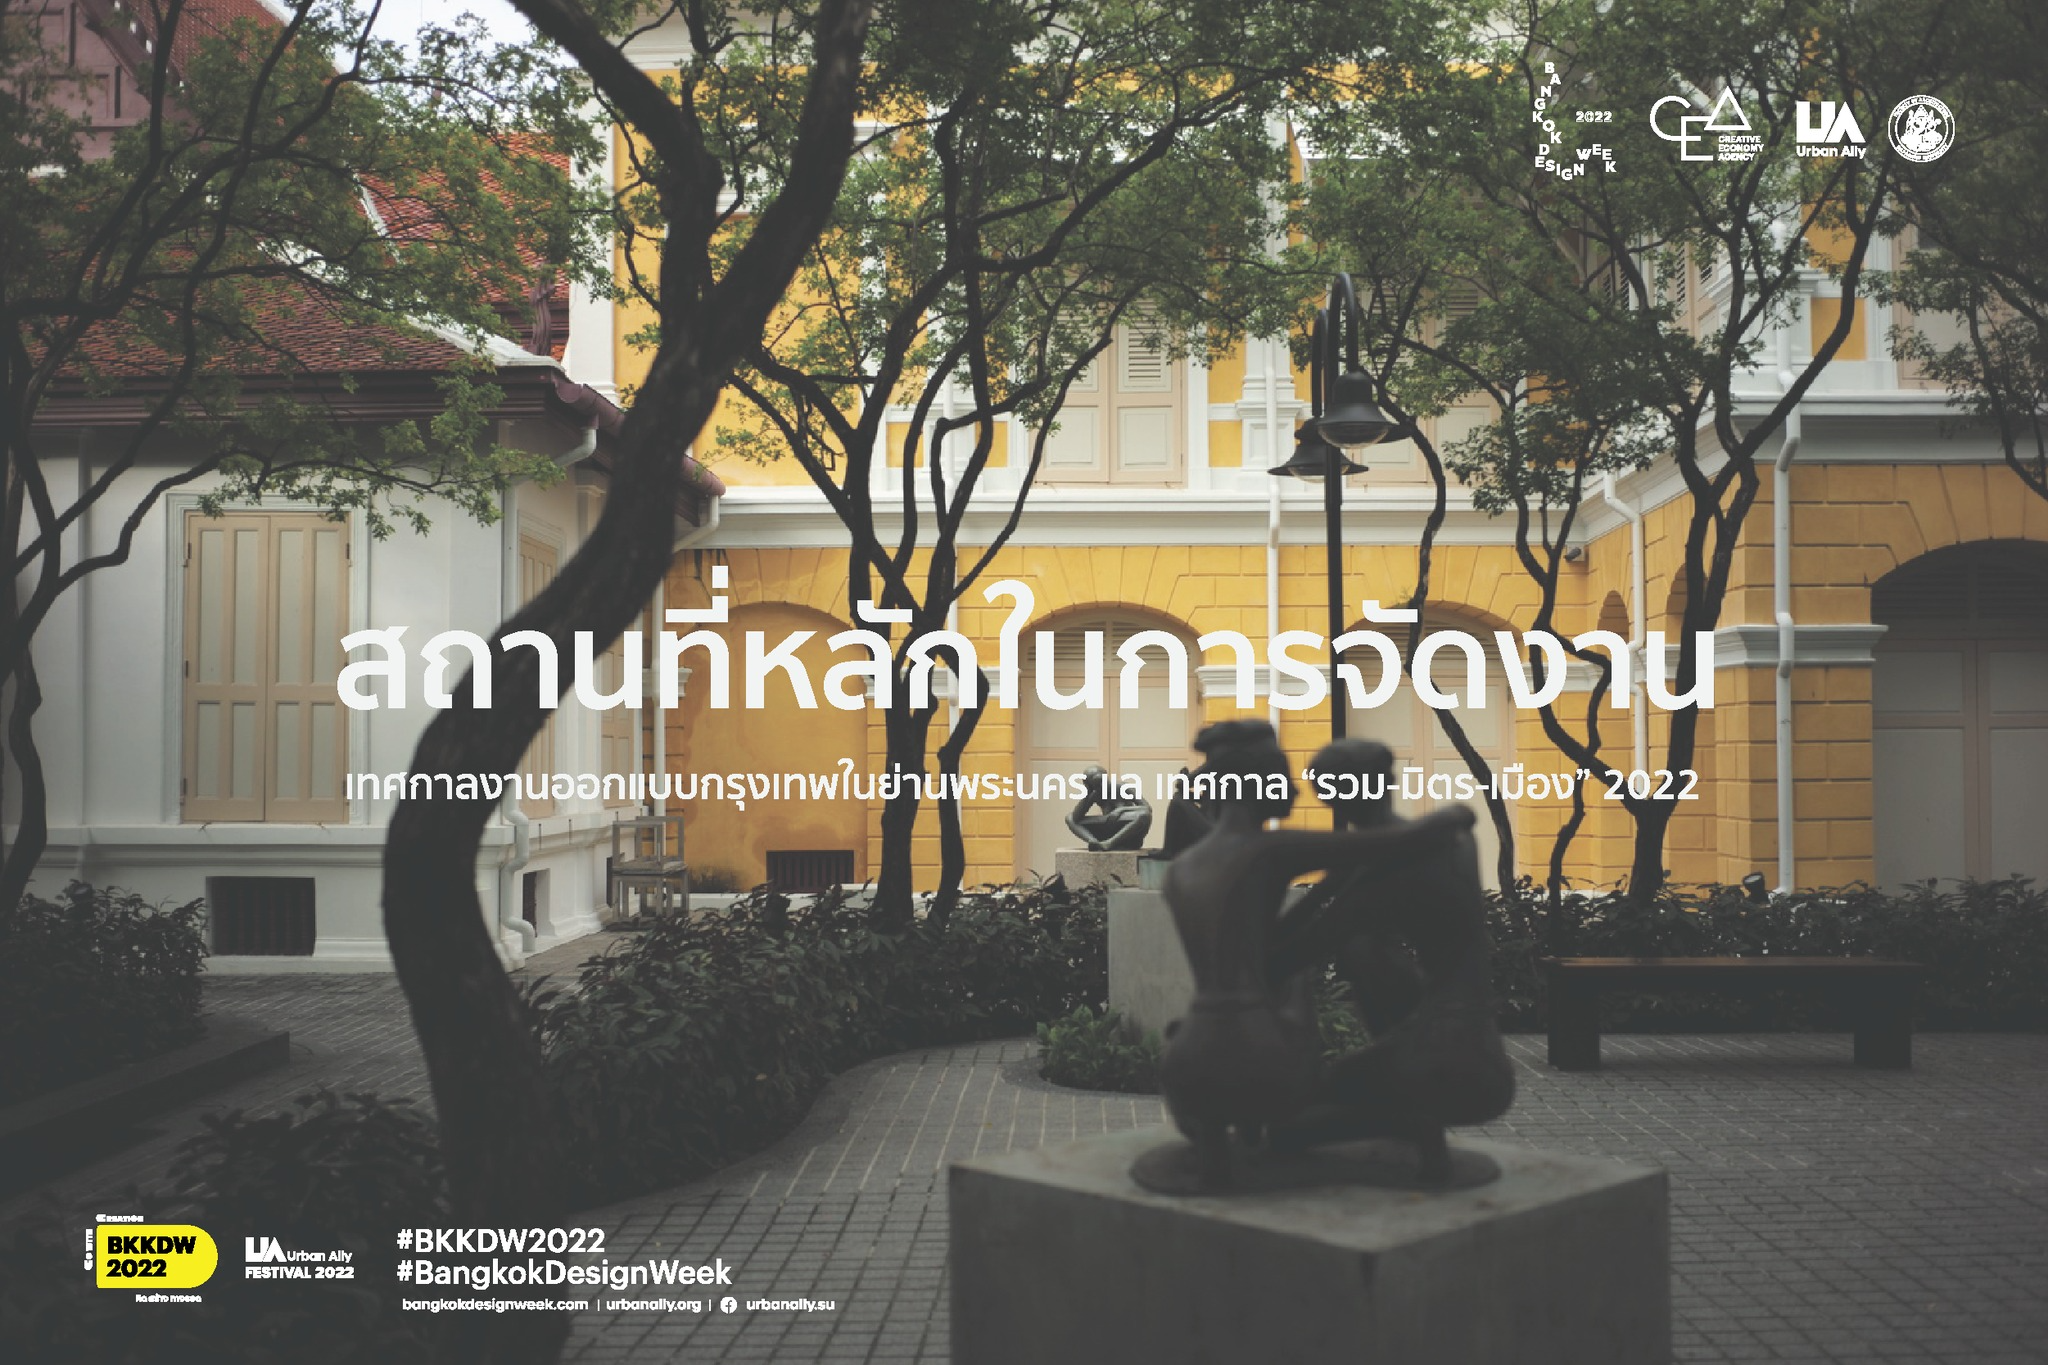 {"th-TH":"Bangkok Design Week x Urban Ally Festival 2022 - สถานที่หลักในการจัดงาน","en-US":"Bangkok Design Week x Urban Ally Festival 2022 - สถานที่หลักในการจัดงาน"}